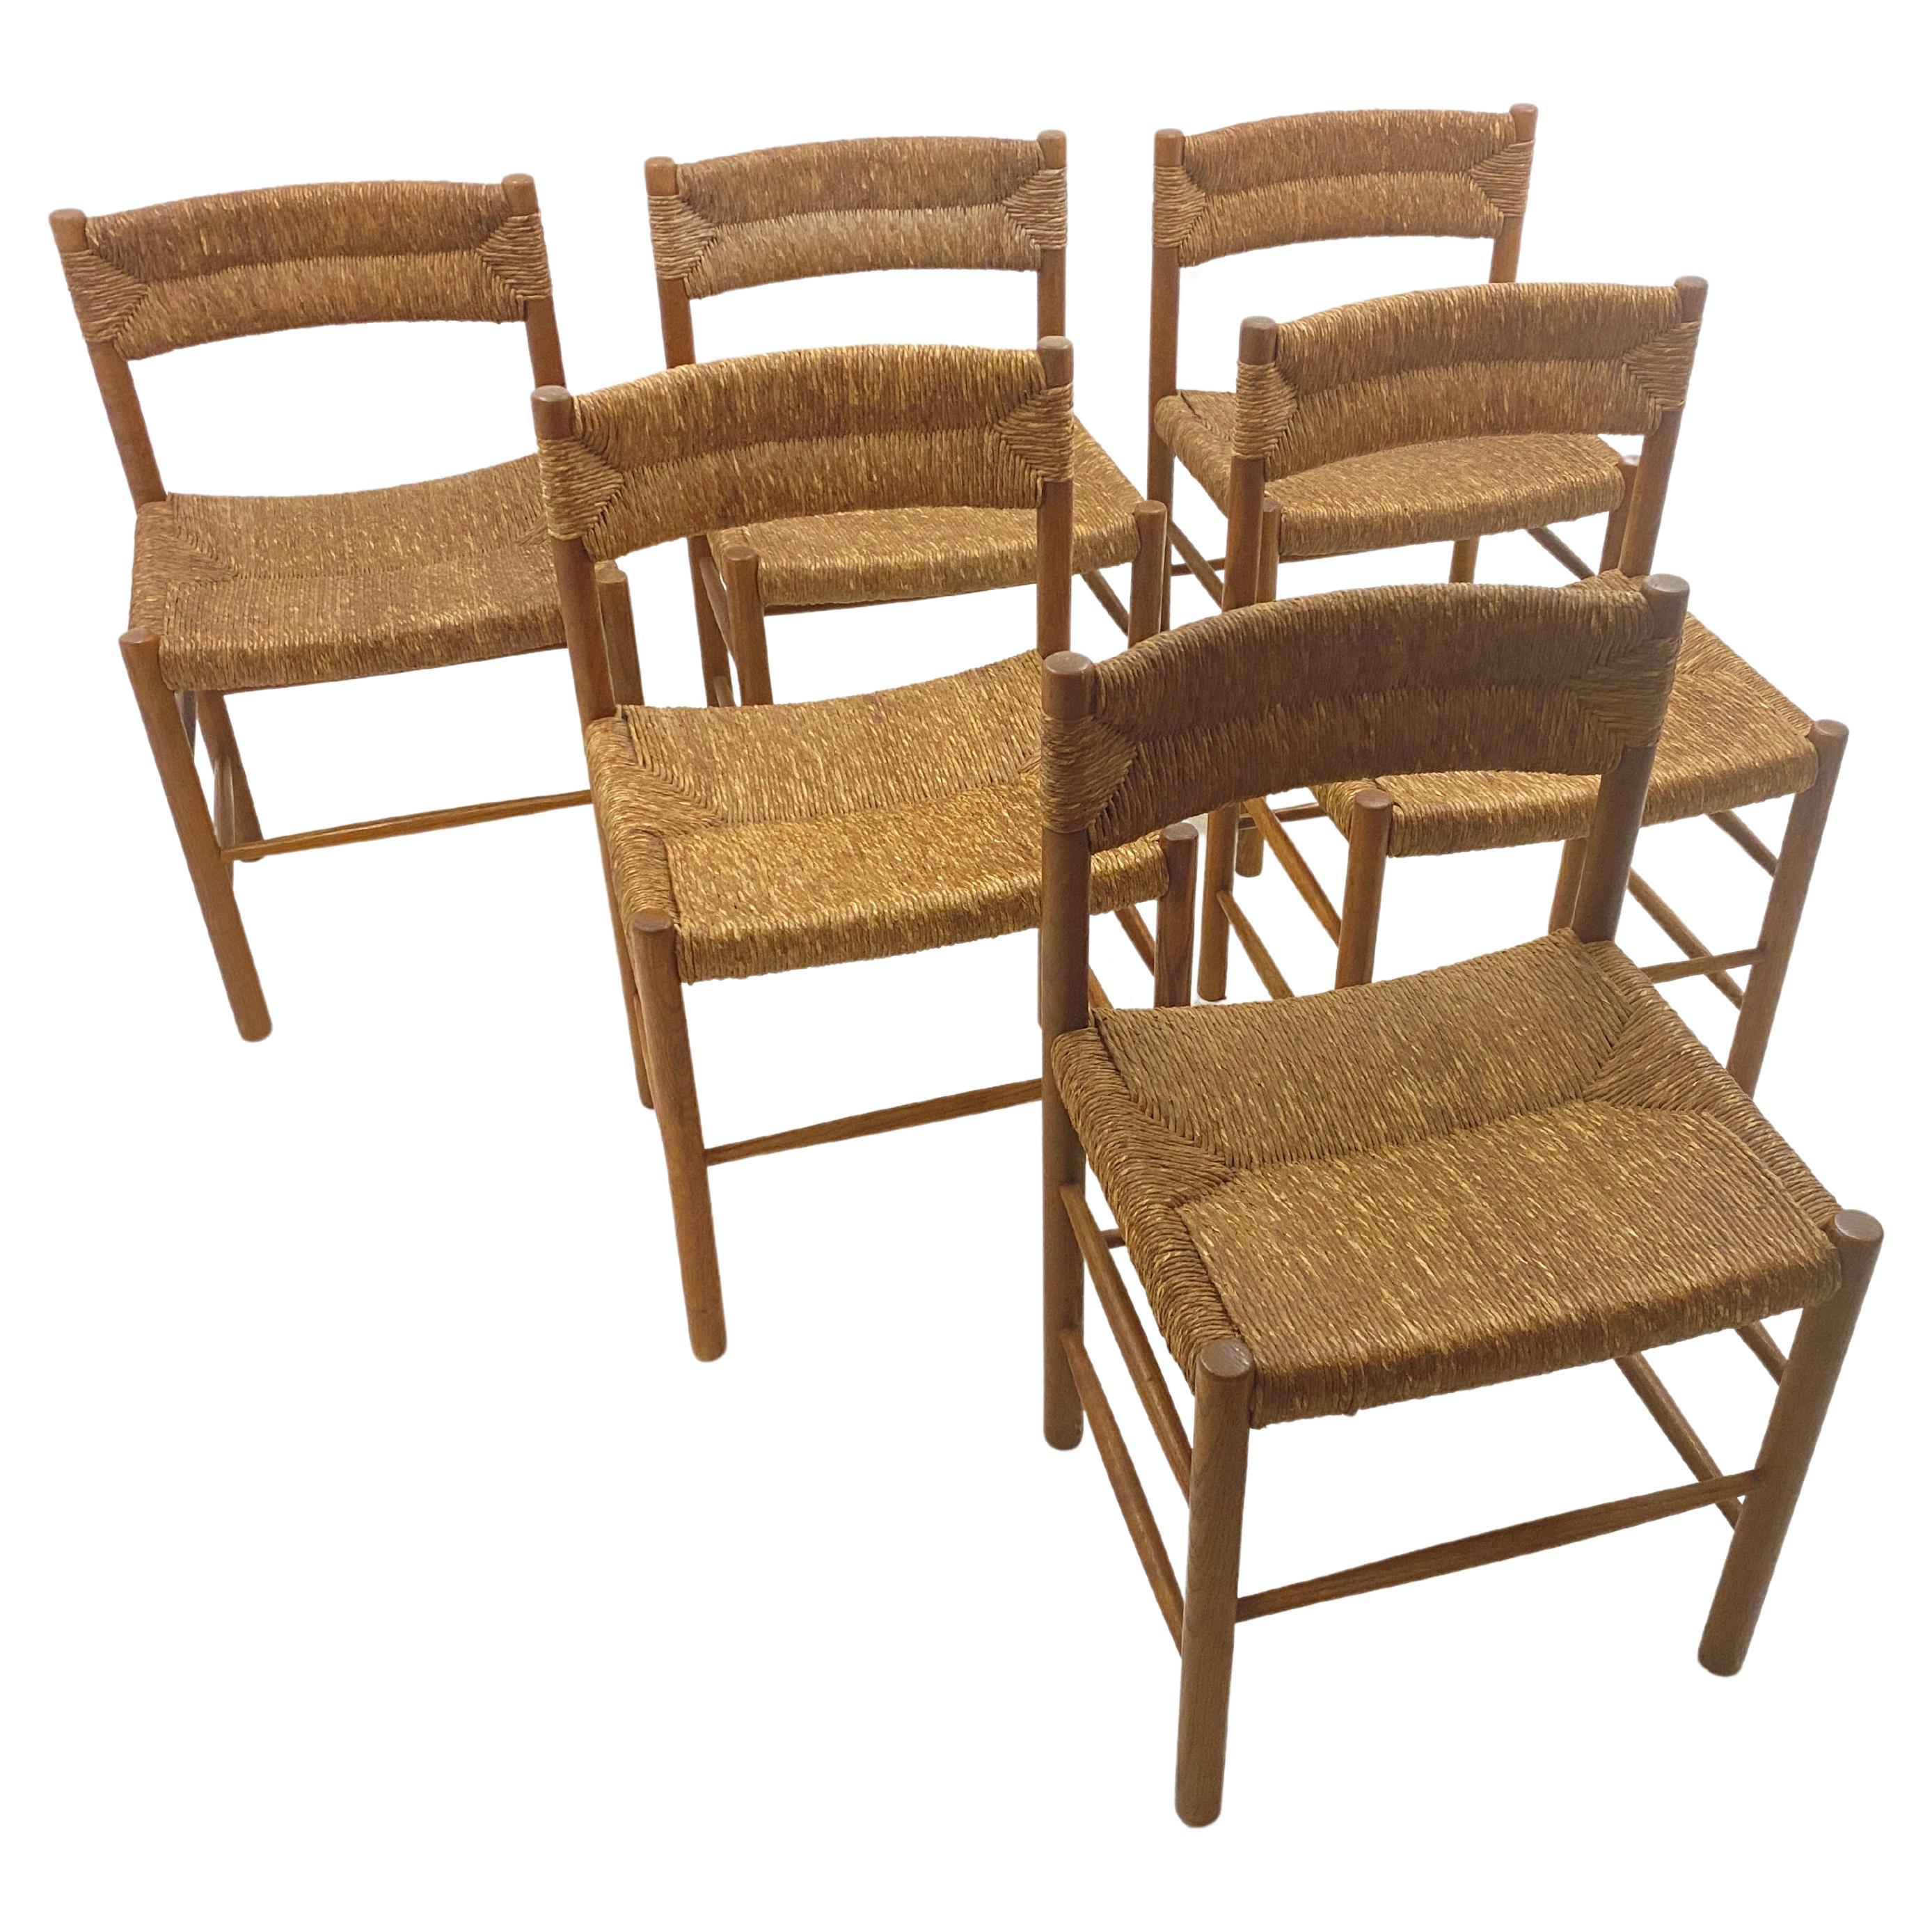 Nous avons ici un lot très rare, de 6 chaises identiques, du modèle Dordogne, par Charlotte Perriand. Cet ensemble, authentique et original, provient d'une famille vivant à Madrid. Cette famille a acheté ses chaises dans les années 1960. Ils n'ont